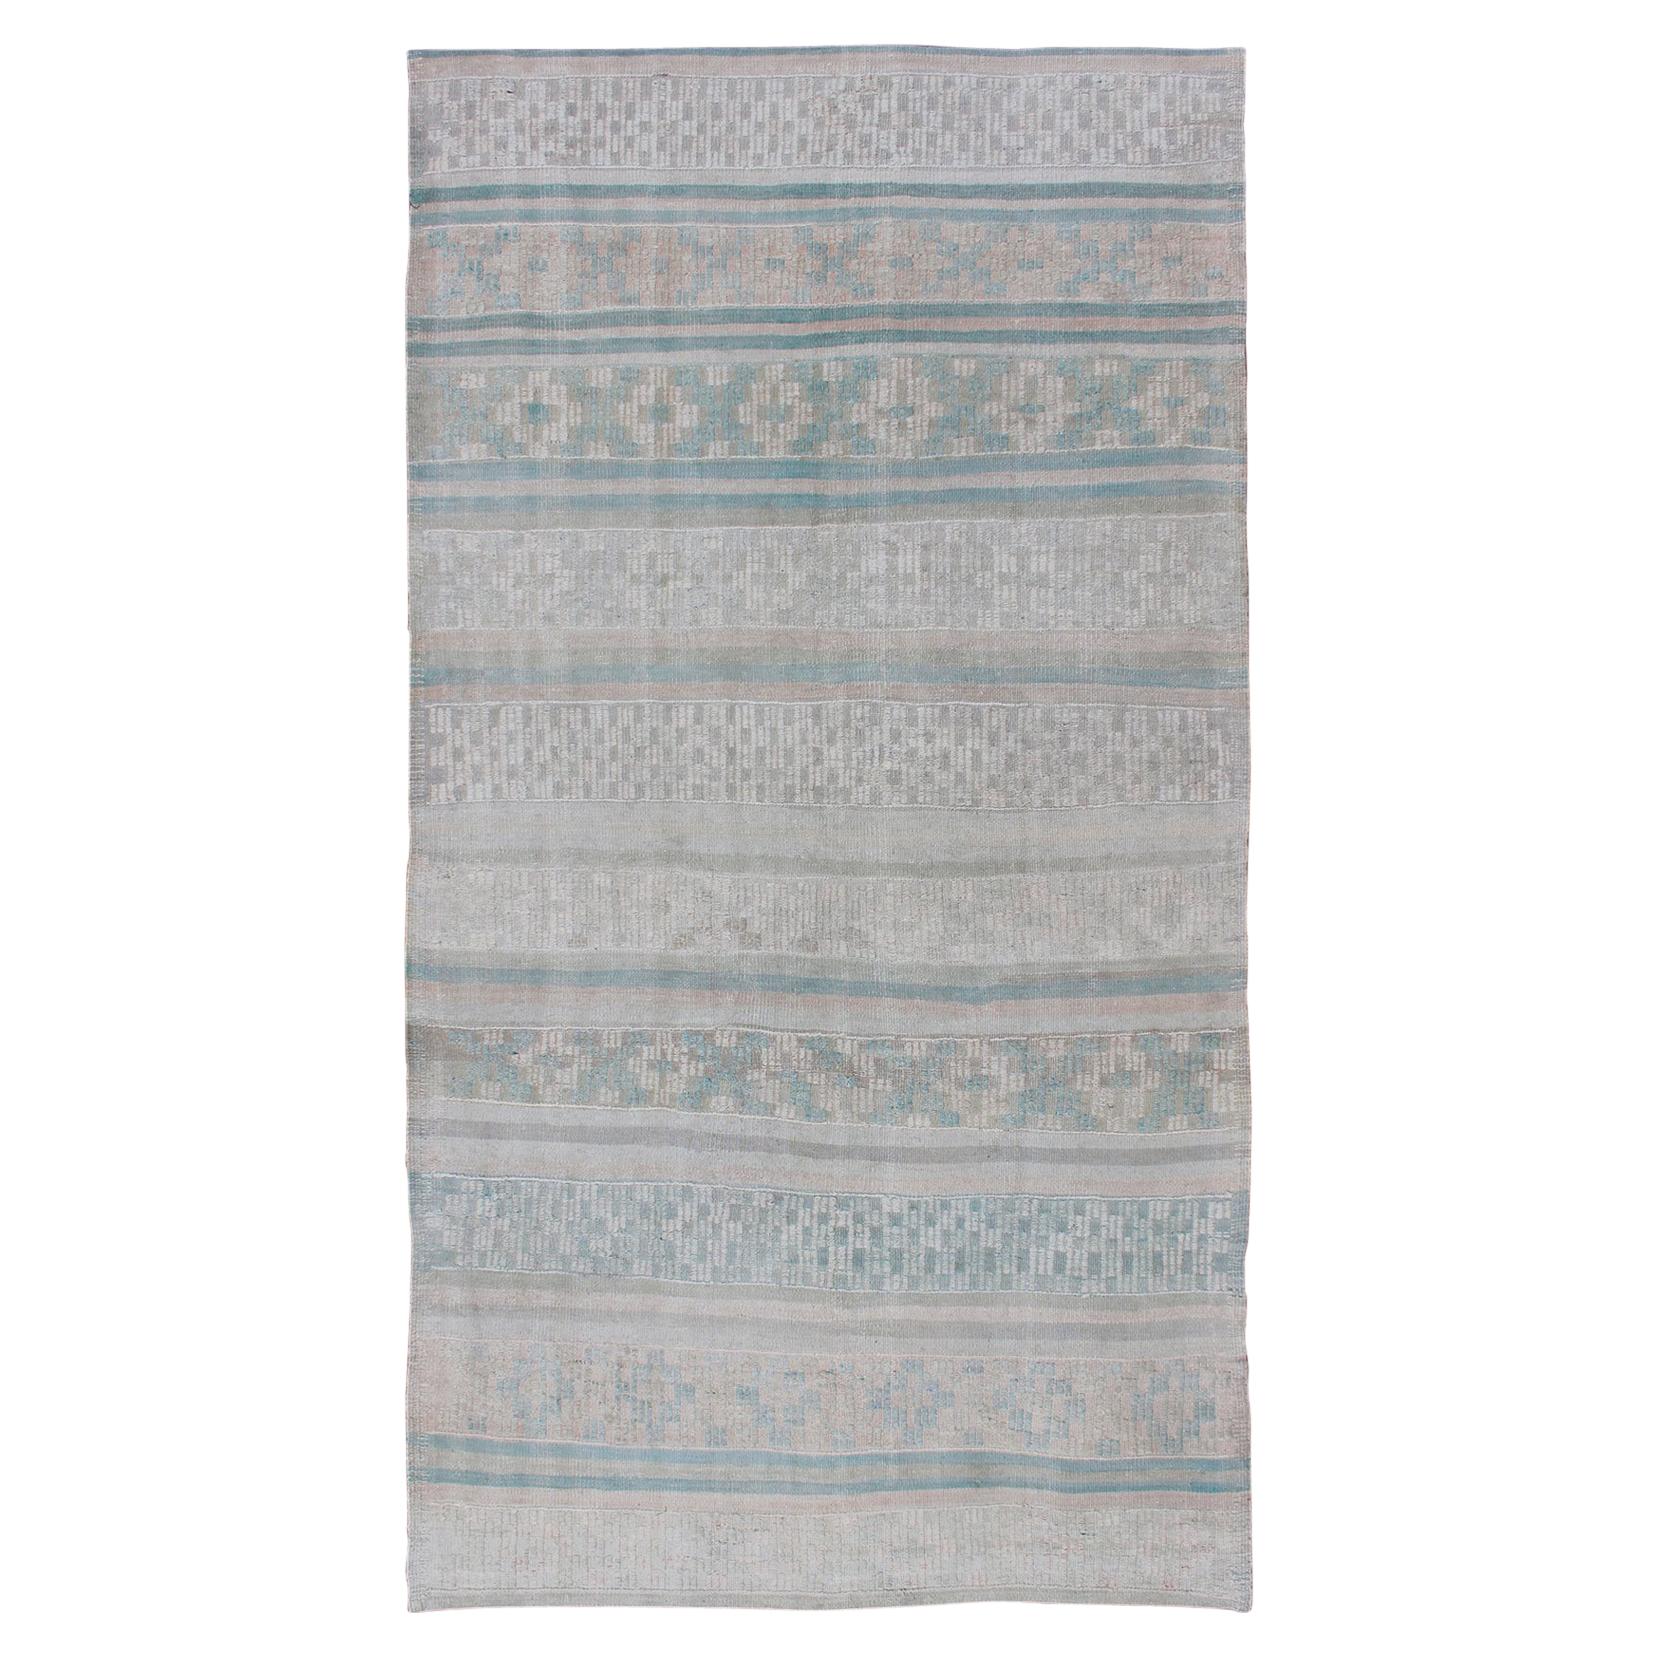 Vieux Kilim à tissage plat avec broderies en blush, vert, bleu et gris